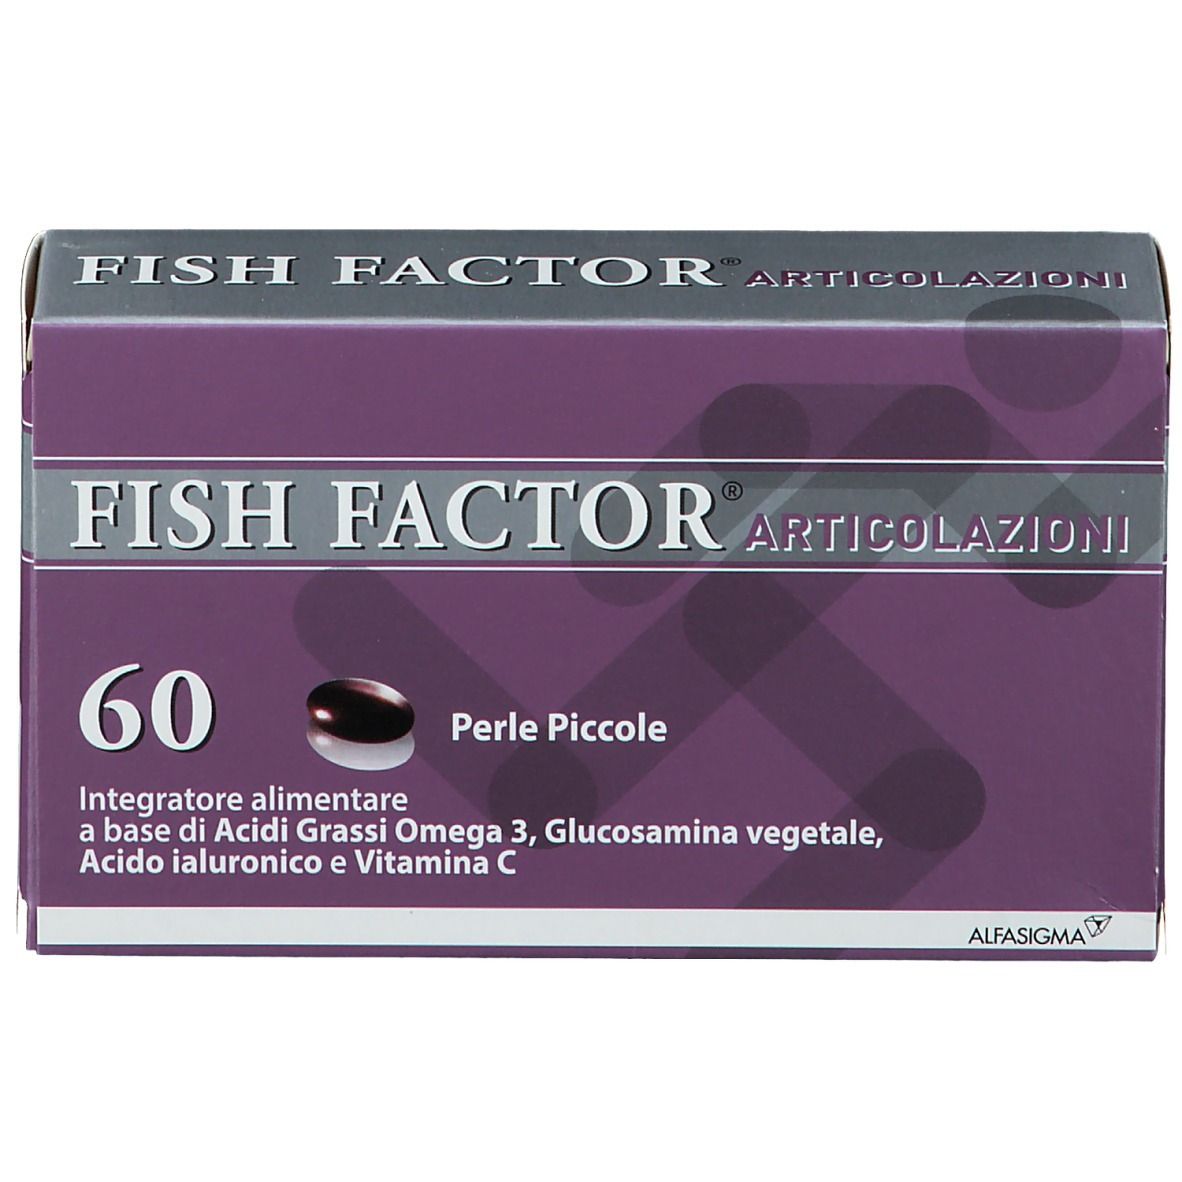 Fish Factor® Articolazioni